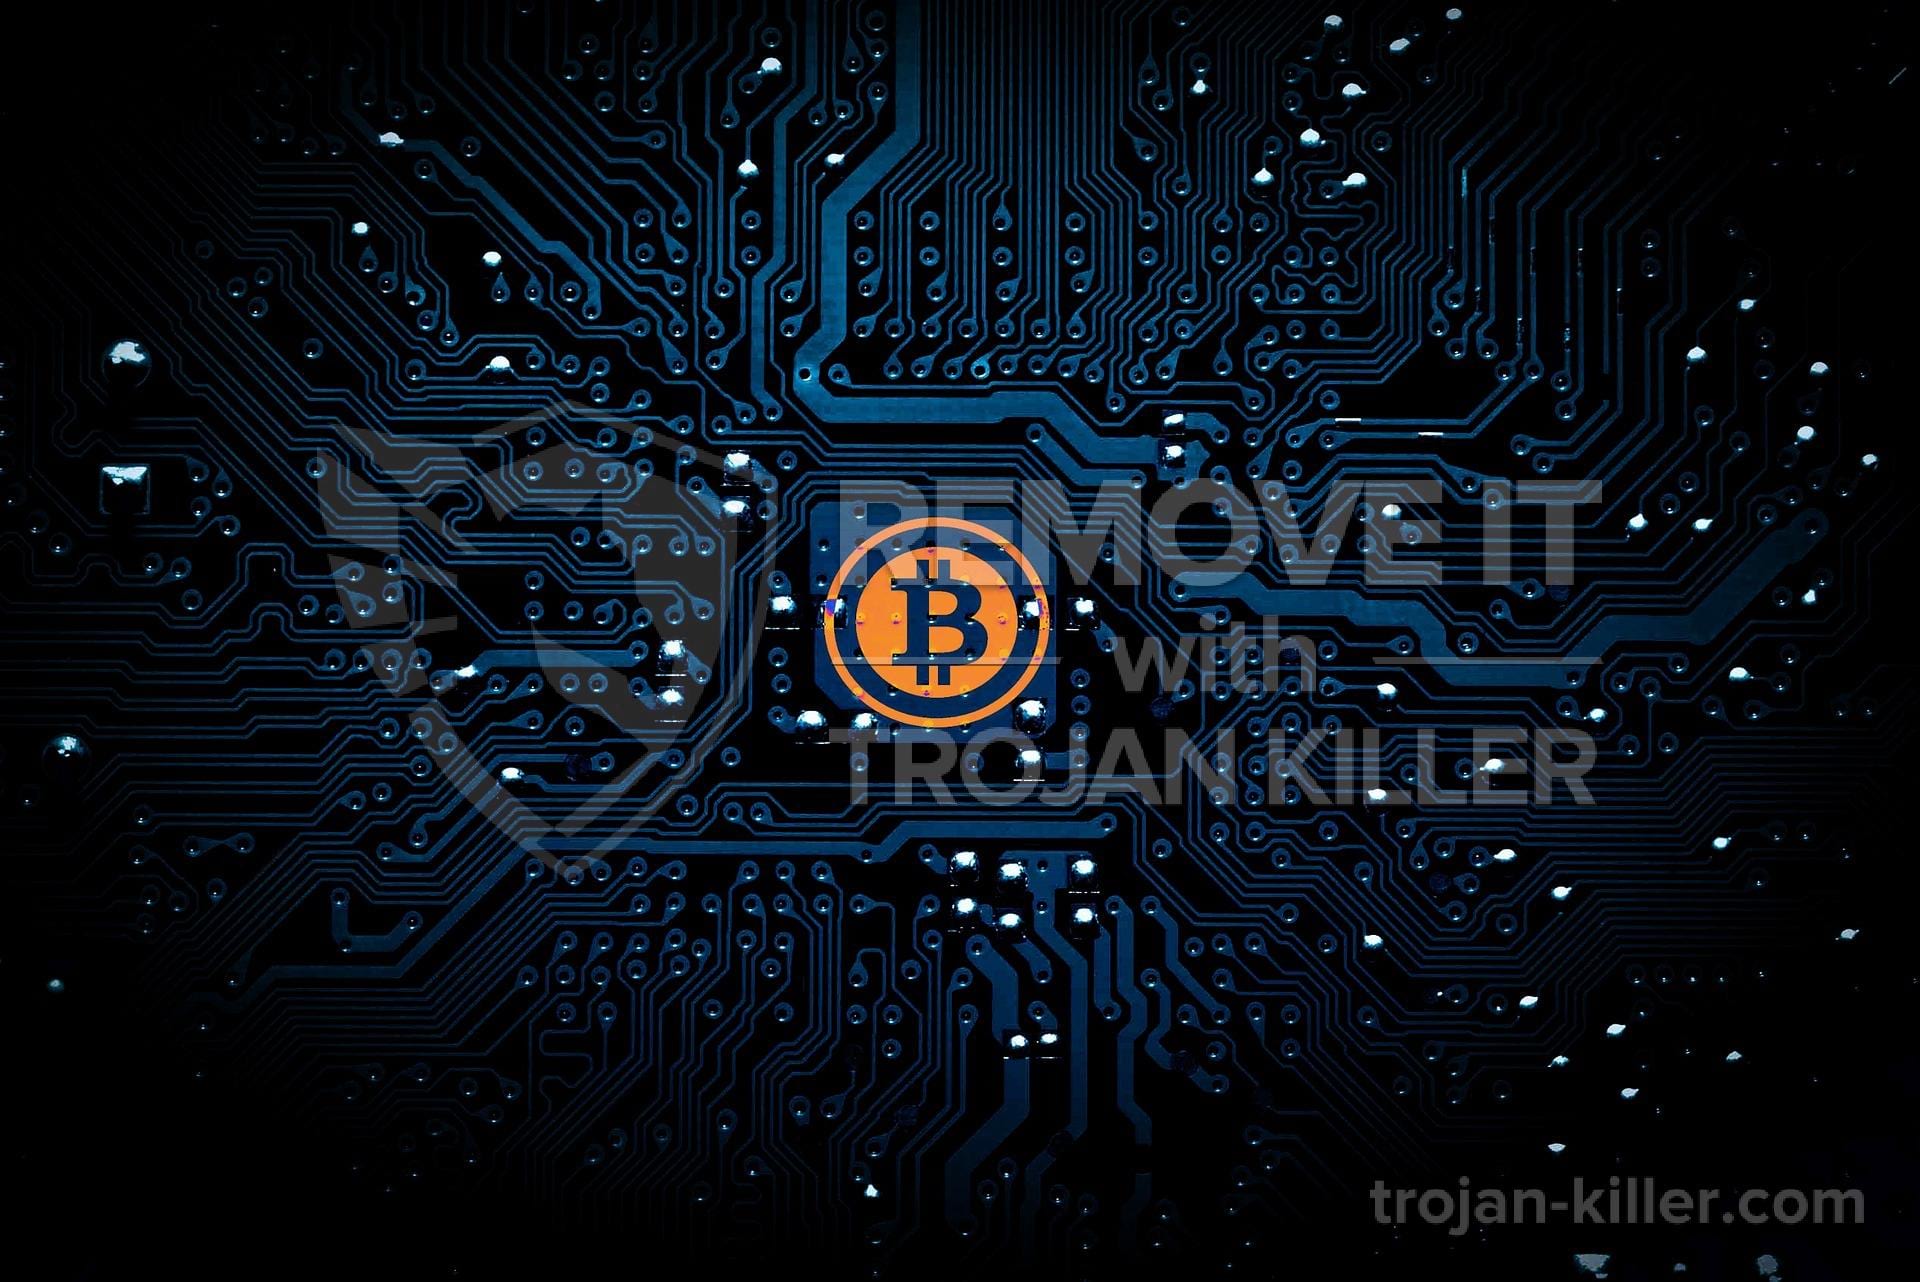 bitcoin miner malware